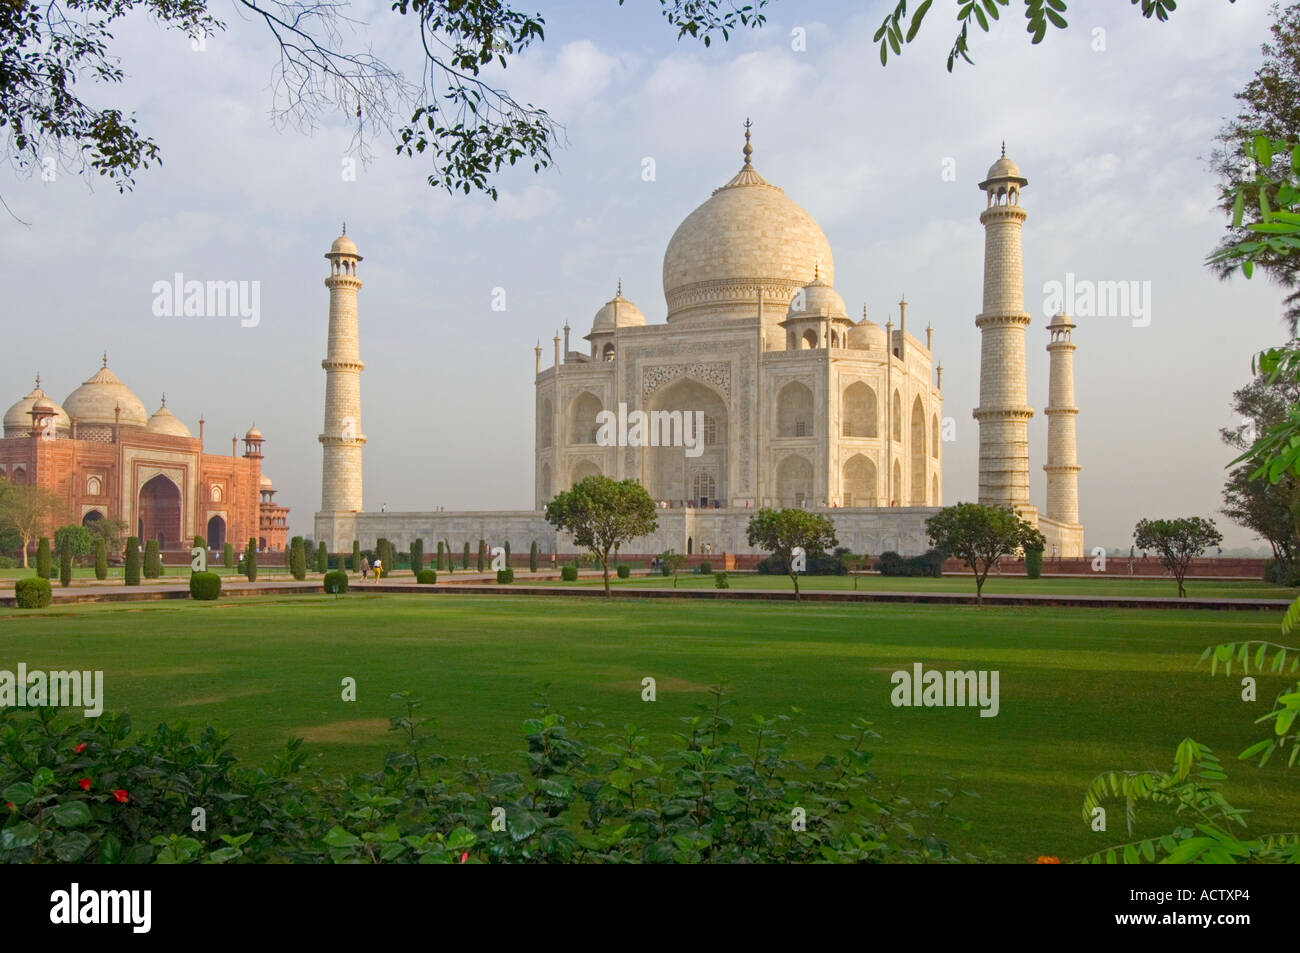 Ein Blick auf das Taj Mahal und umliegenden Ziergärten mit rotem Sandstein Moschee oder Masjid in den Westen. Stockfoto